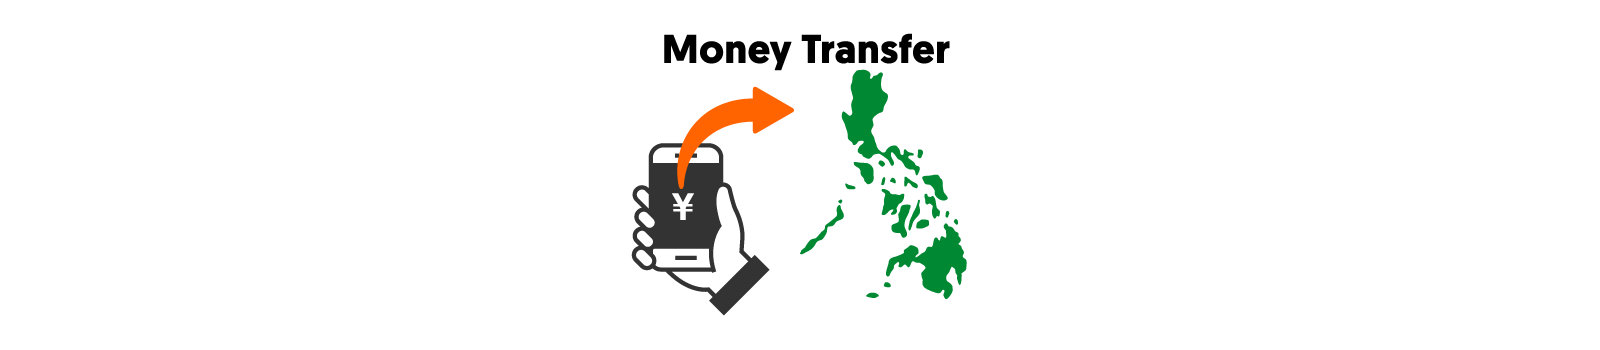 日本からフィリピンへの送金をスマホアプリでできるサービスのイメージイラスト